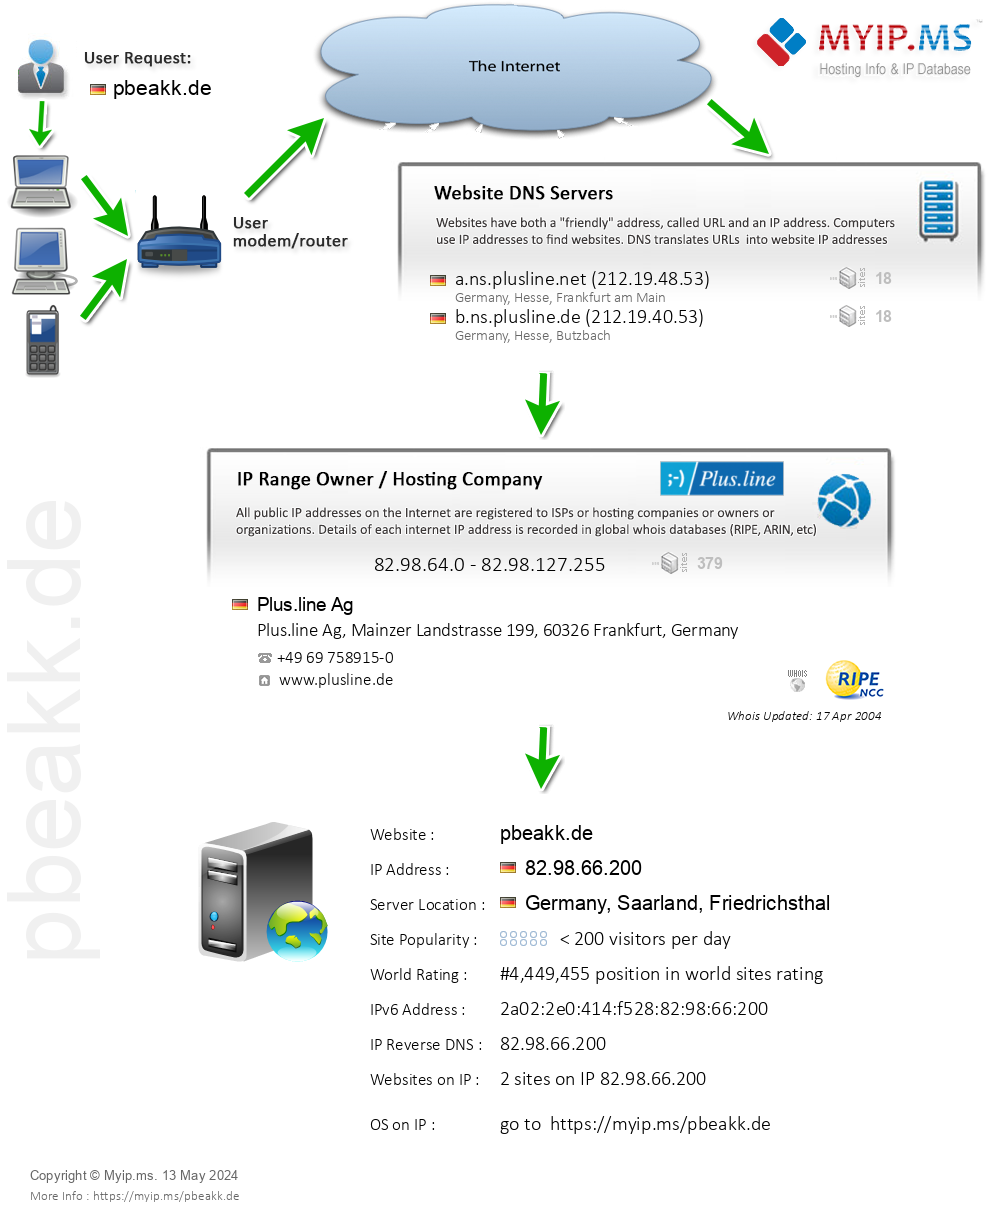 Pbeakk.de - Website Hosting Visual IP Diagram